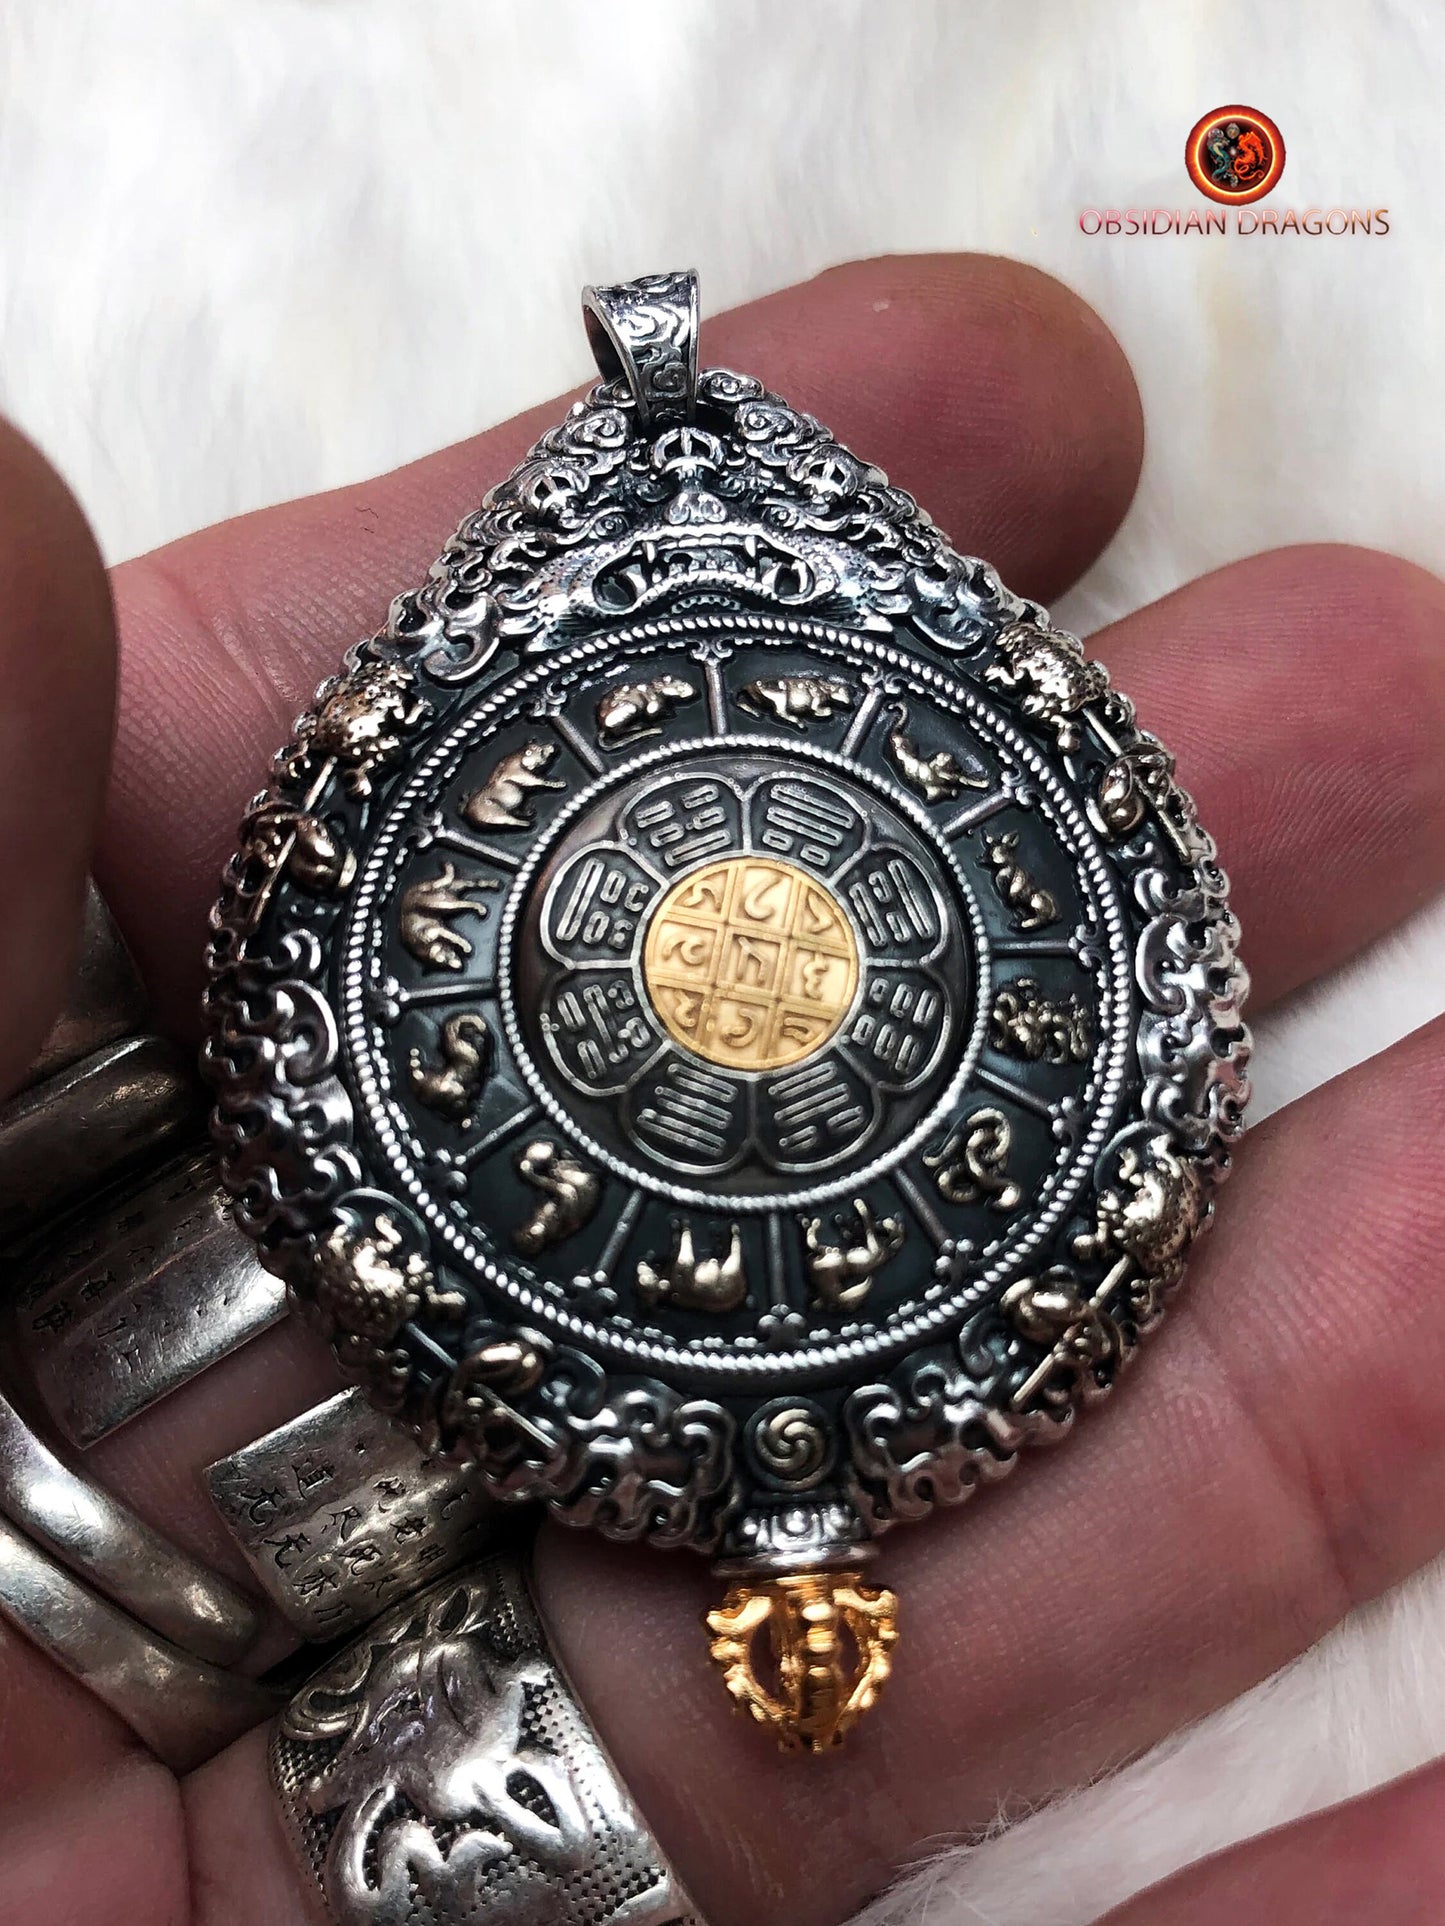 pendentif bouddha. protection de Vairocana. Authentique ghau avec tangka peint sur or. Amulette bouddhiste vajrayana - obsidian dragon